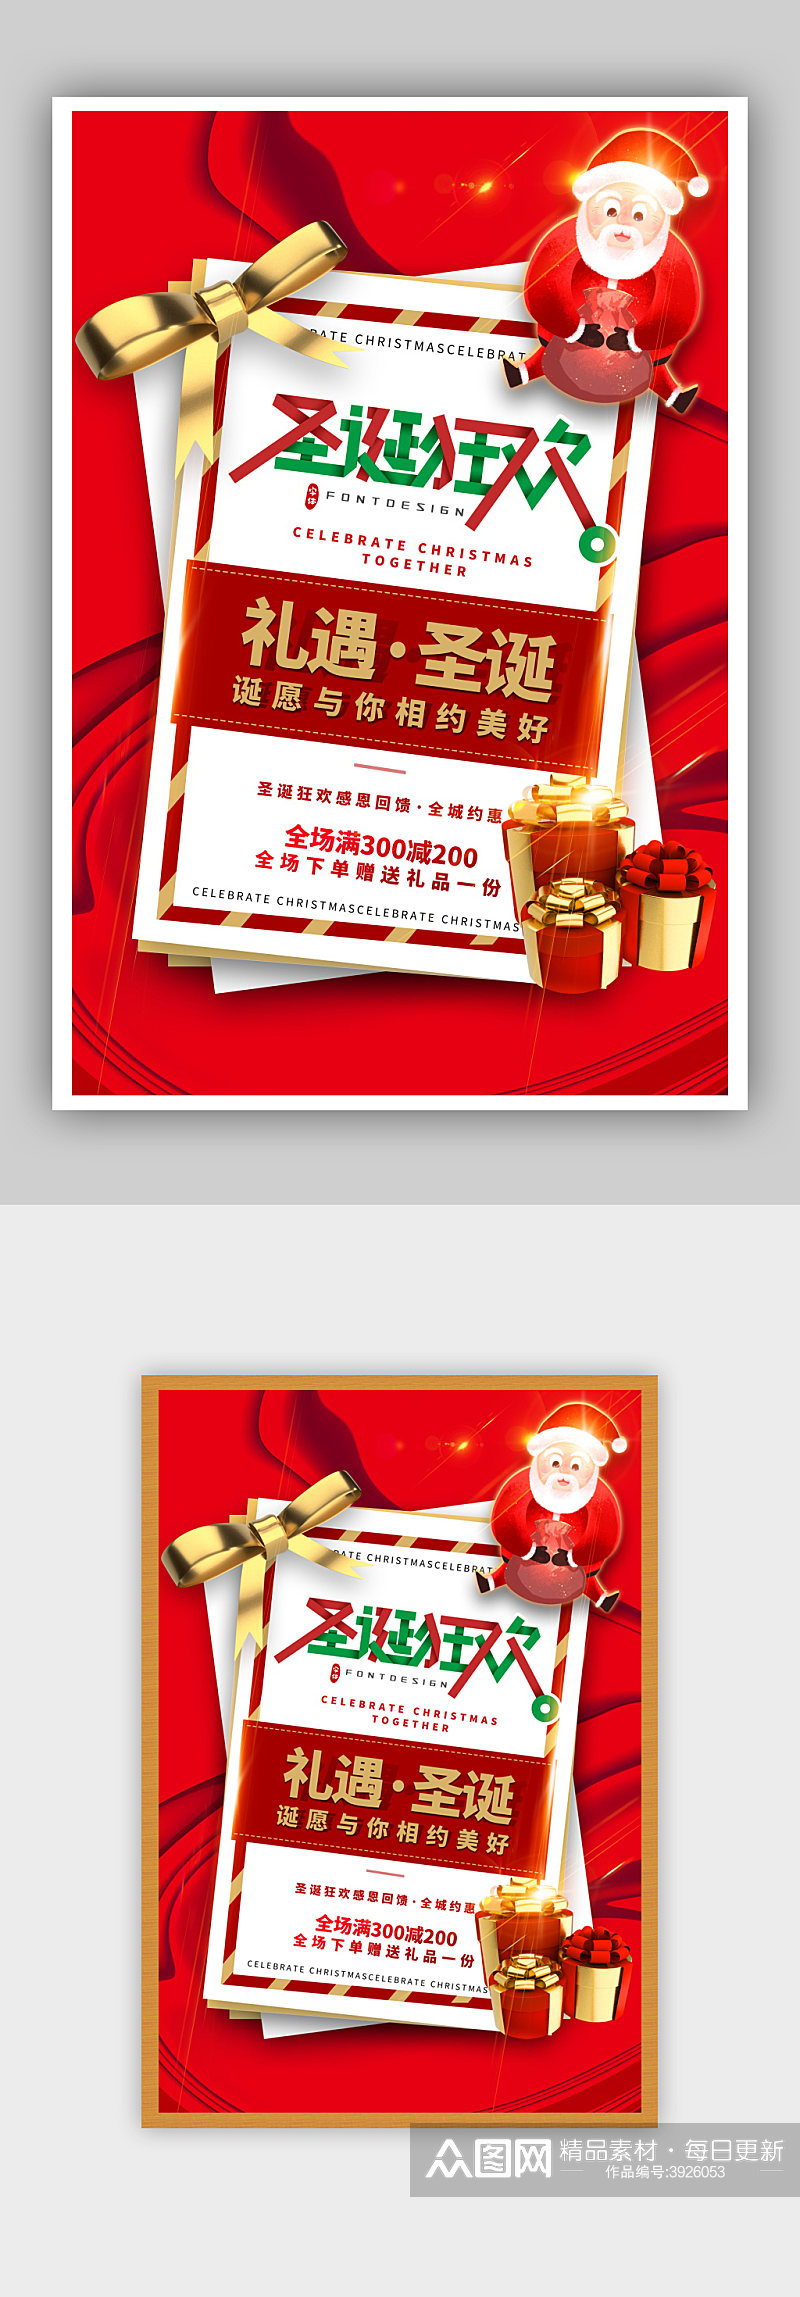 红色贺卡风圣诞节促销海报素材